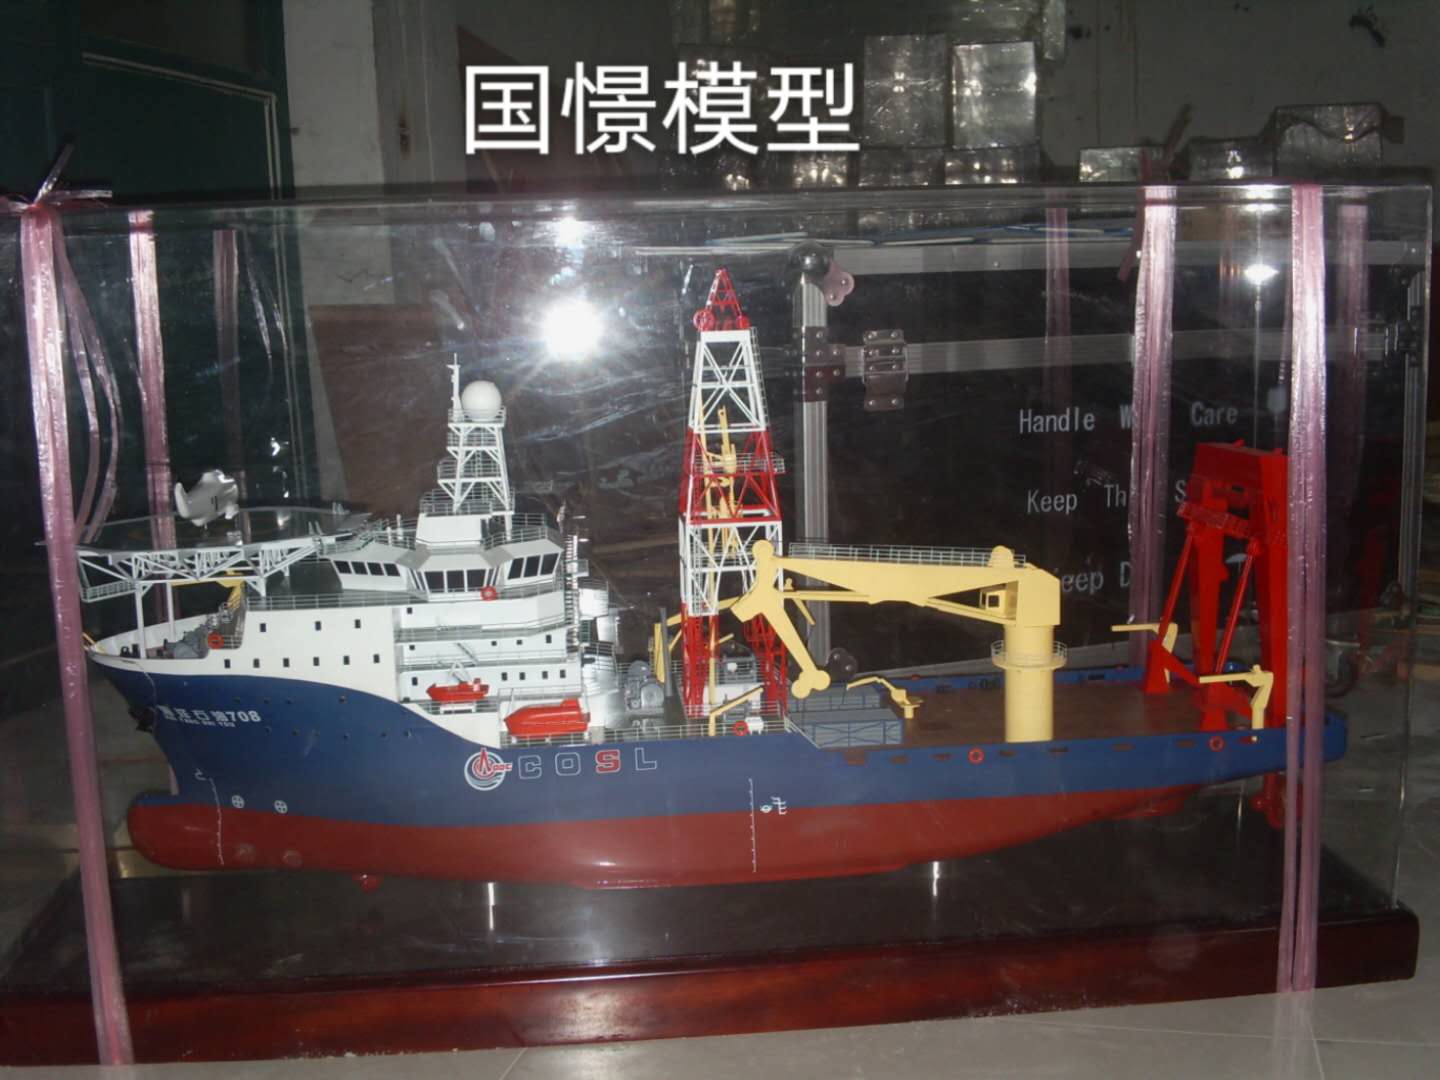 定南县船舶模型